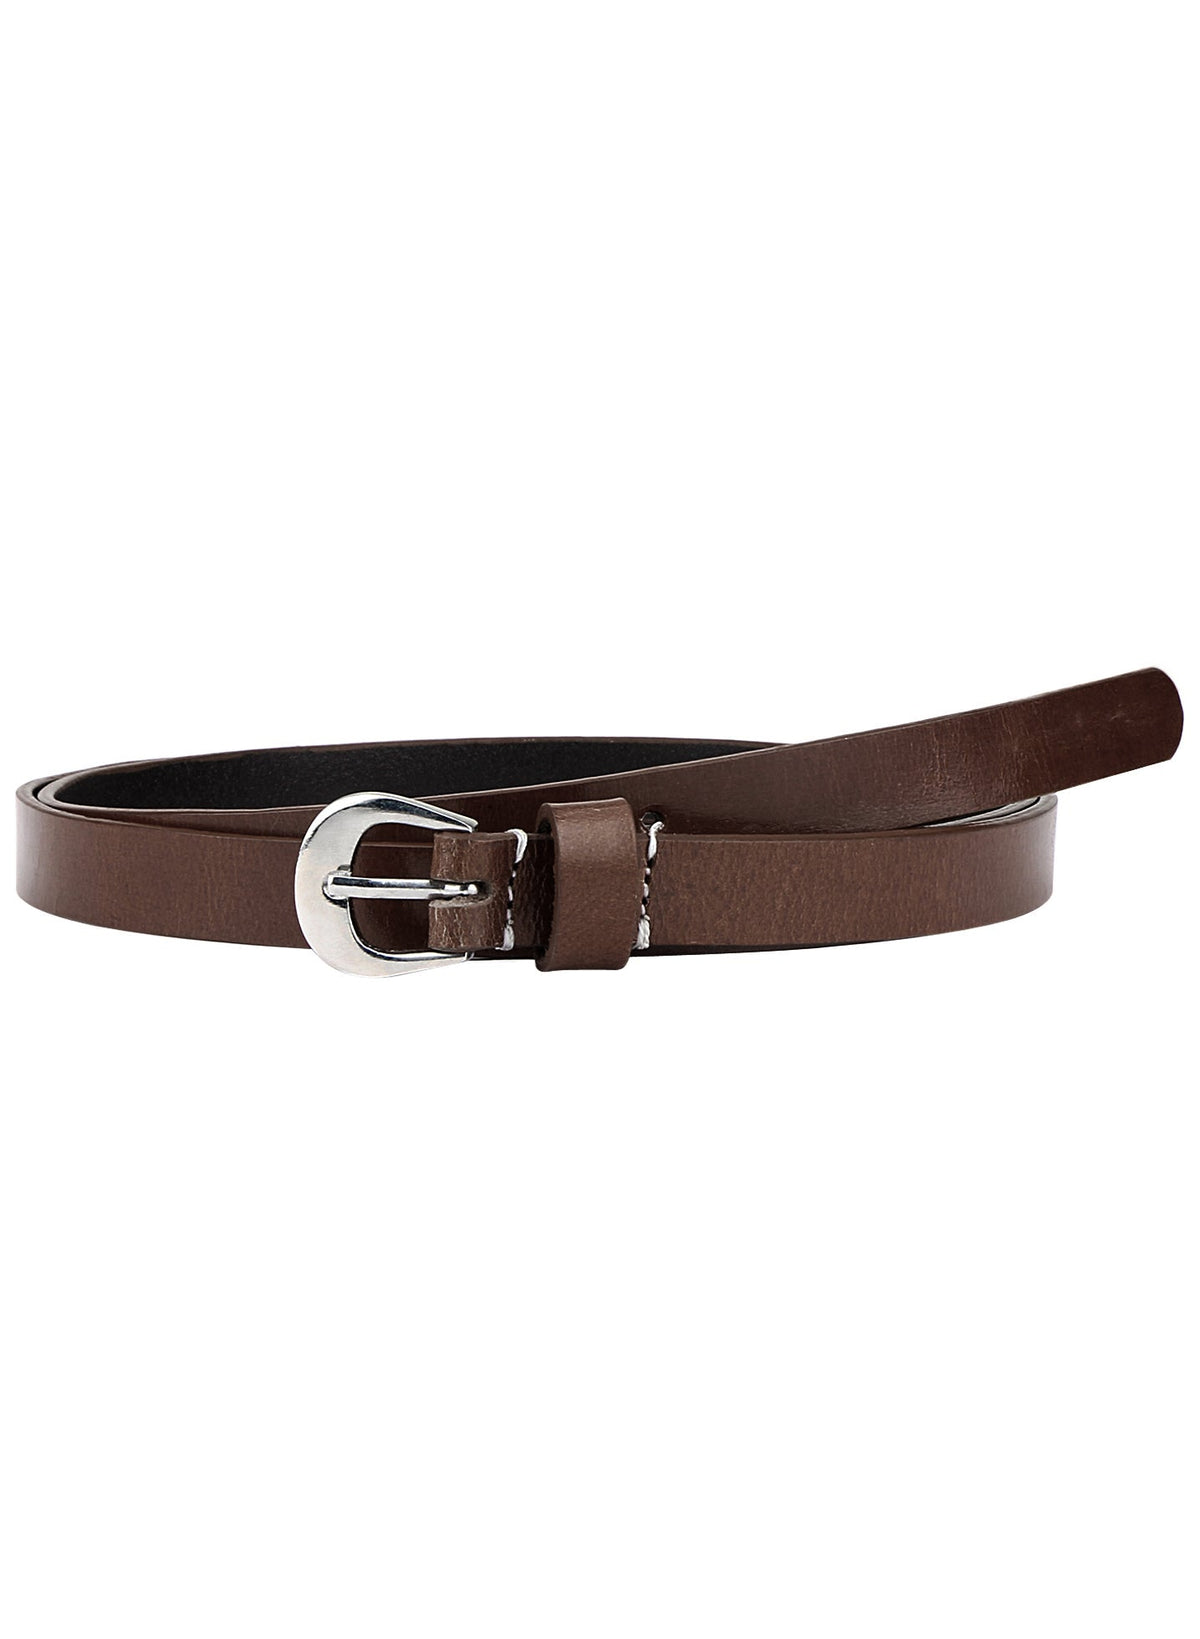 Brown leather belt Aditi Wasan